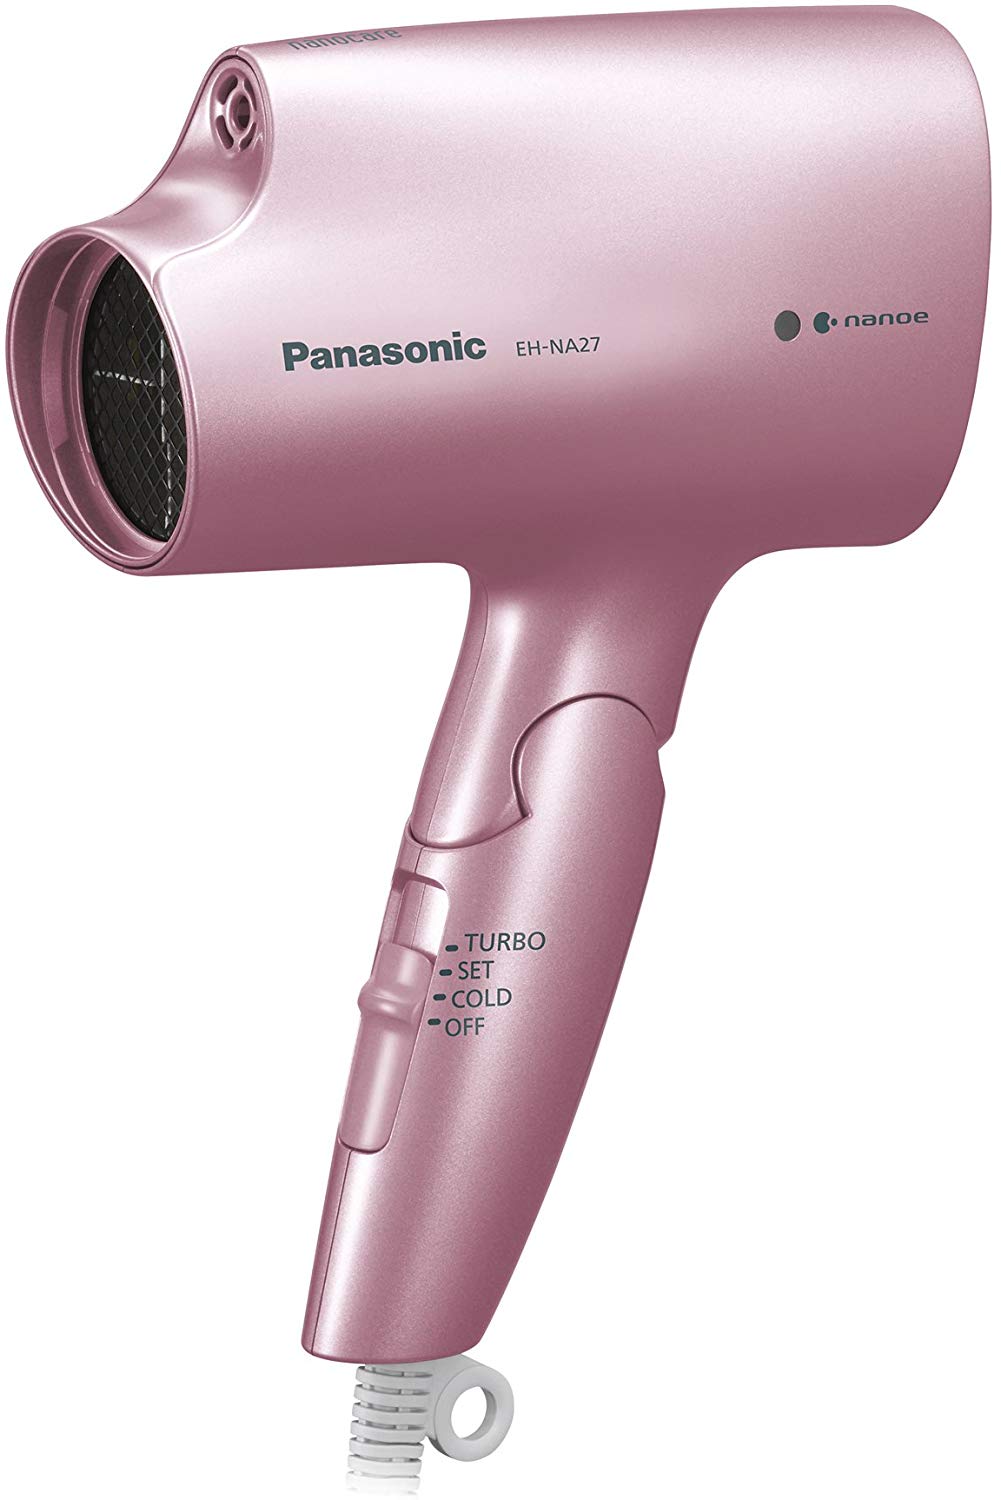 Panasonic hair dryer nano care...